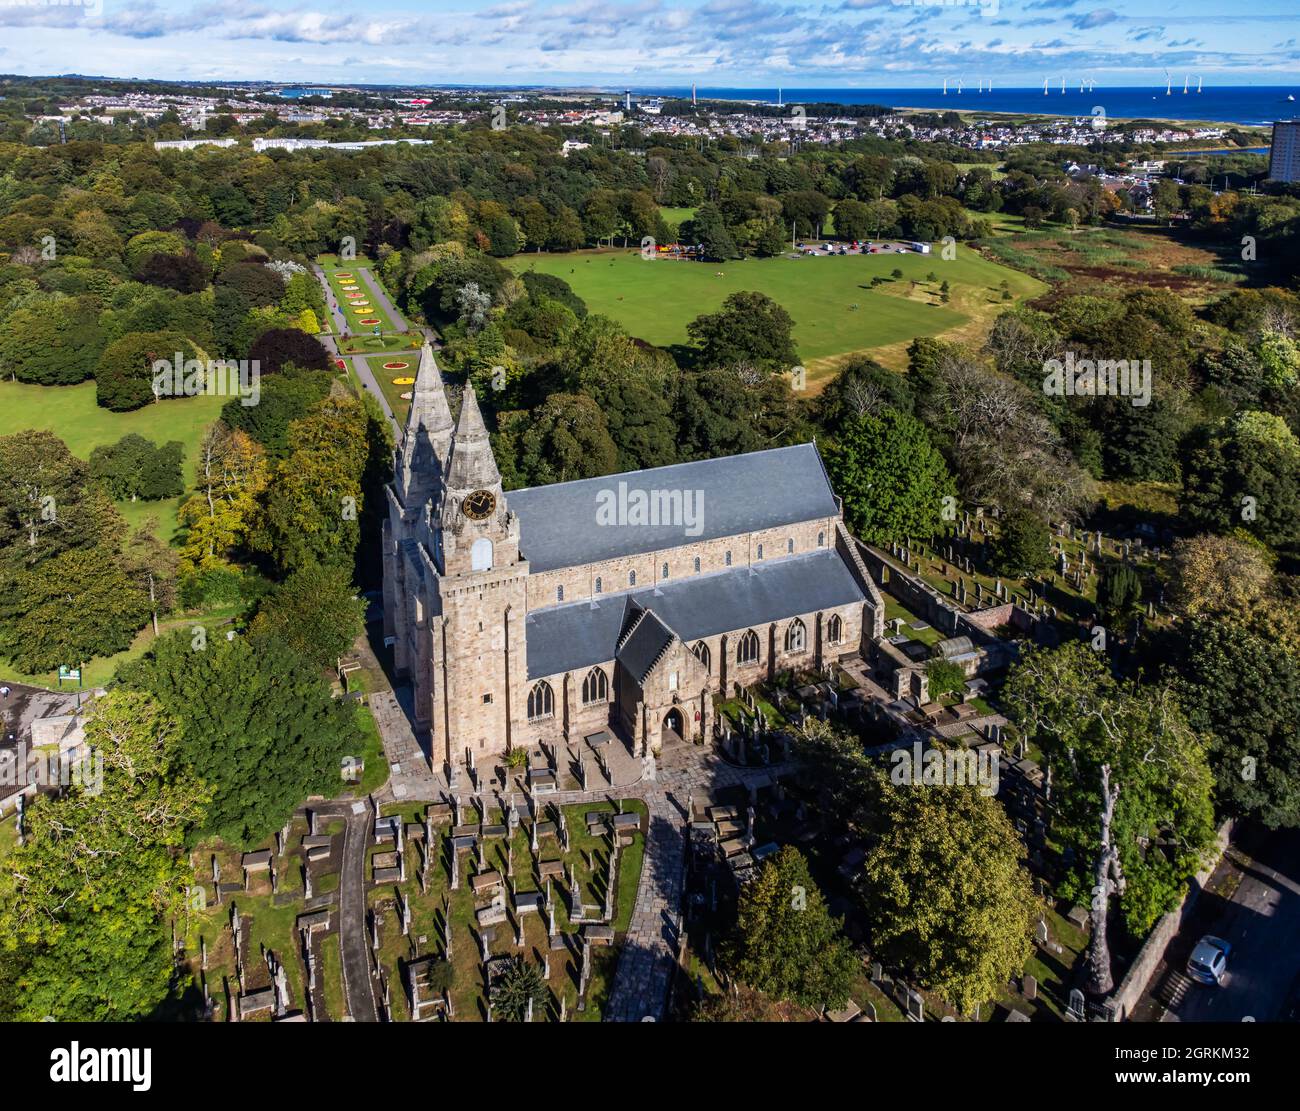 Vue aérienne de la cathédrale St Machar (ou St Machar) dans la ville d'Aberdeen, en Écosse, avec le parc Seaton visible en arrière-plan Banque D'Images